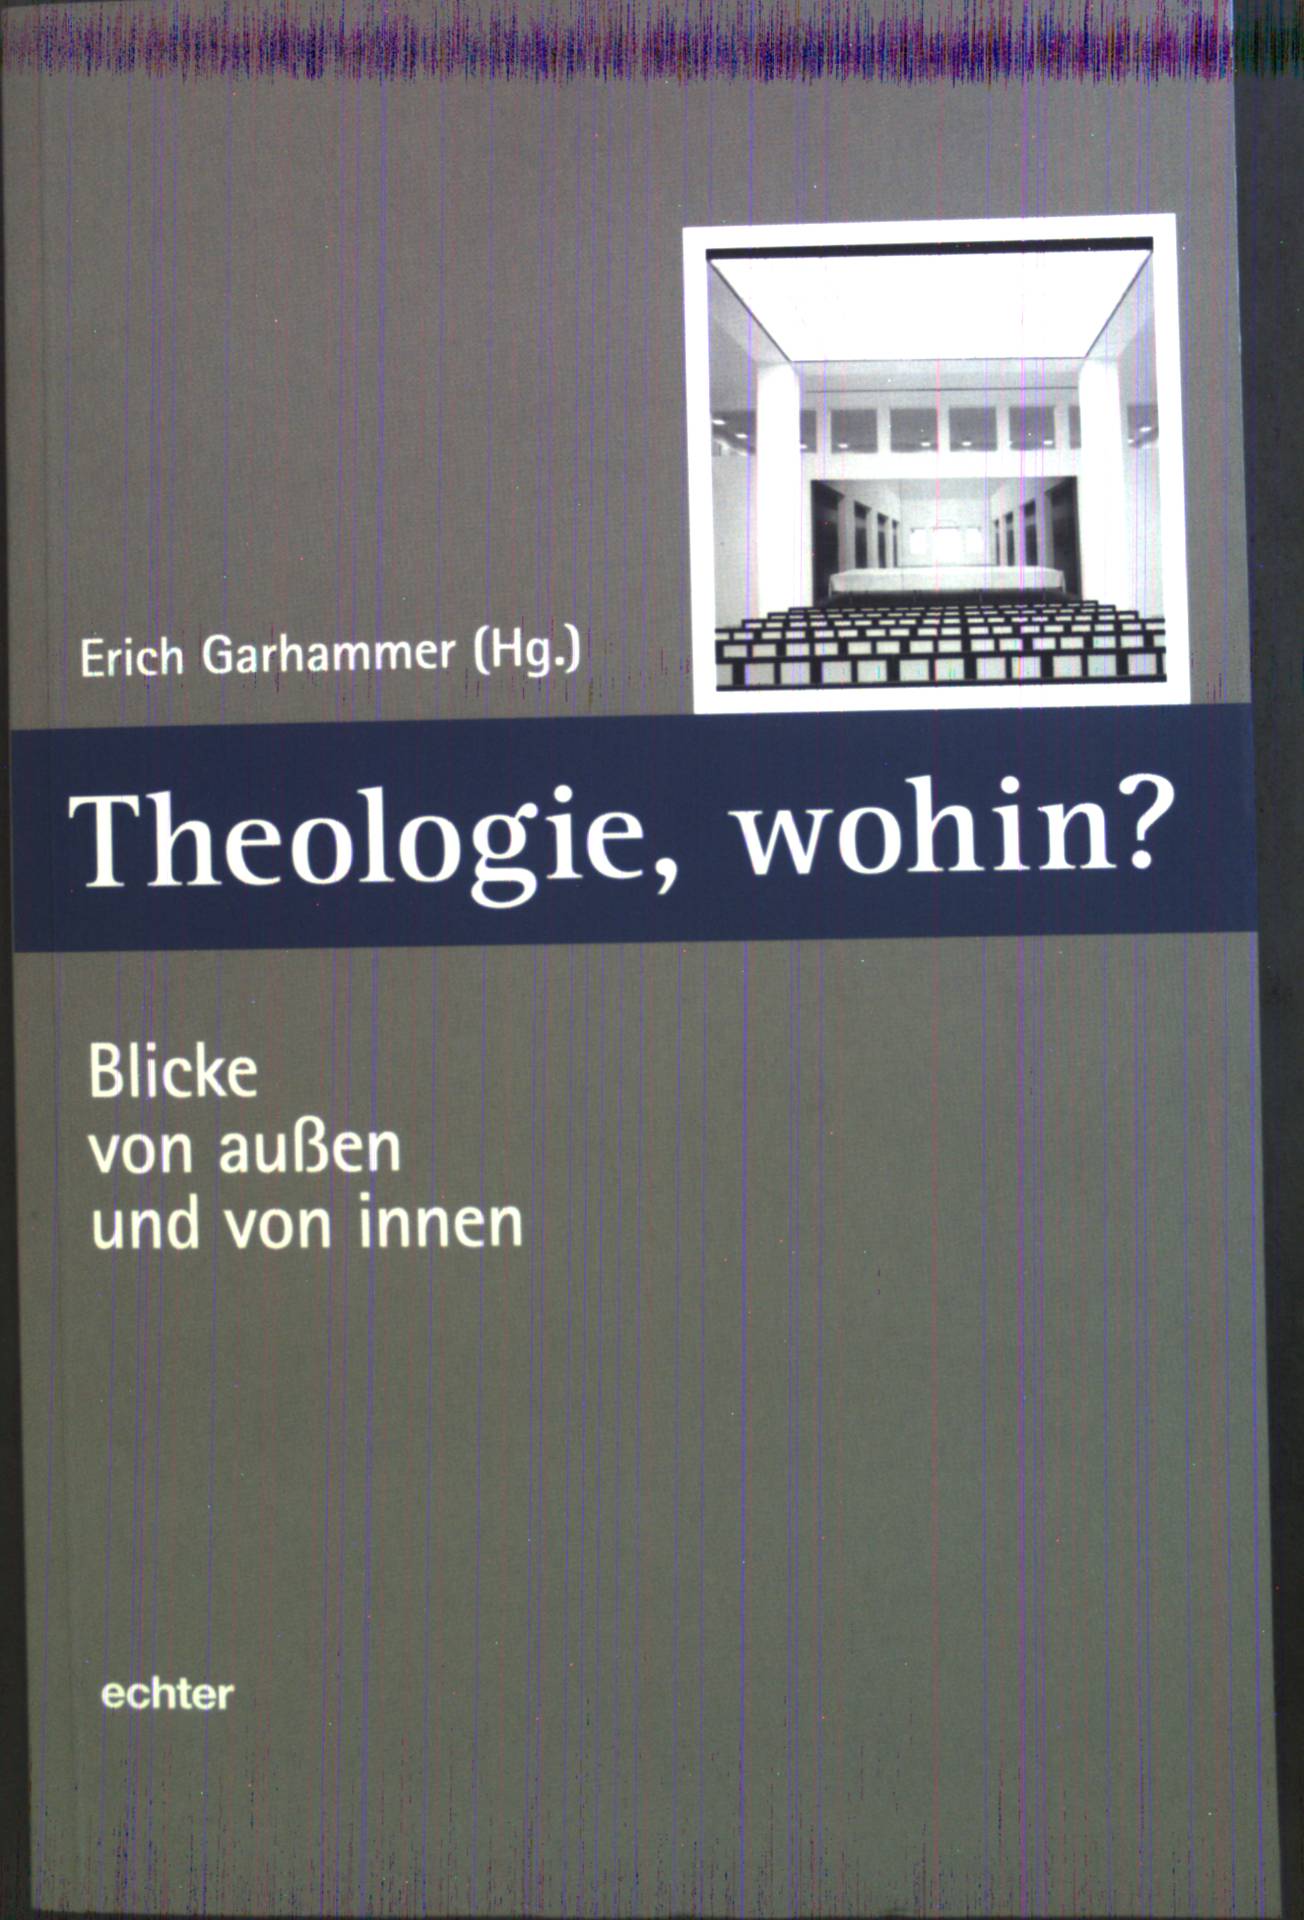 Theologie, wohin? : Blicke von außen und von innen. Würzburger Theologie ; Bd. 6 - Garhammer, Erich (Herausgeber)